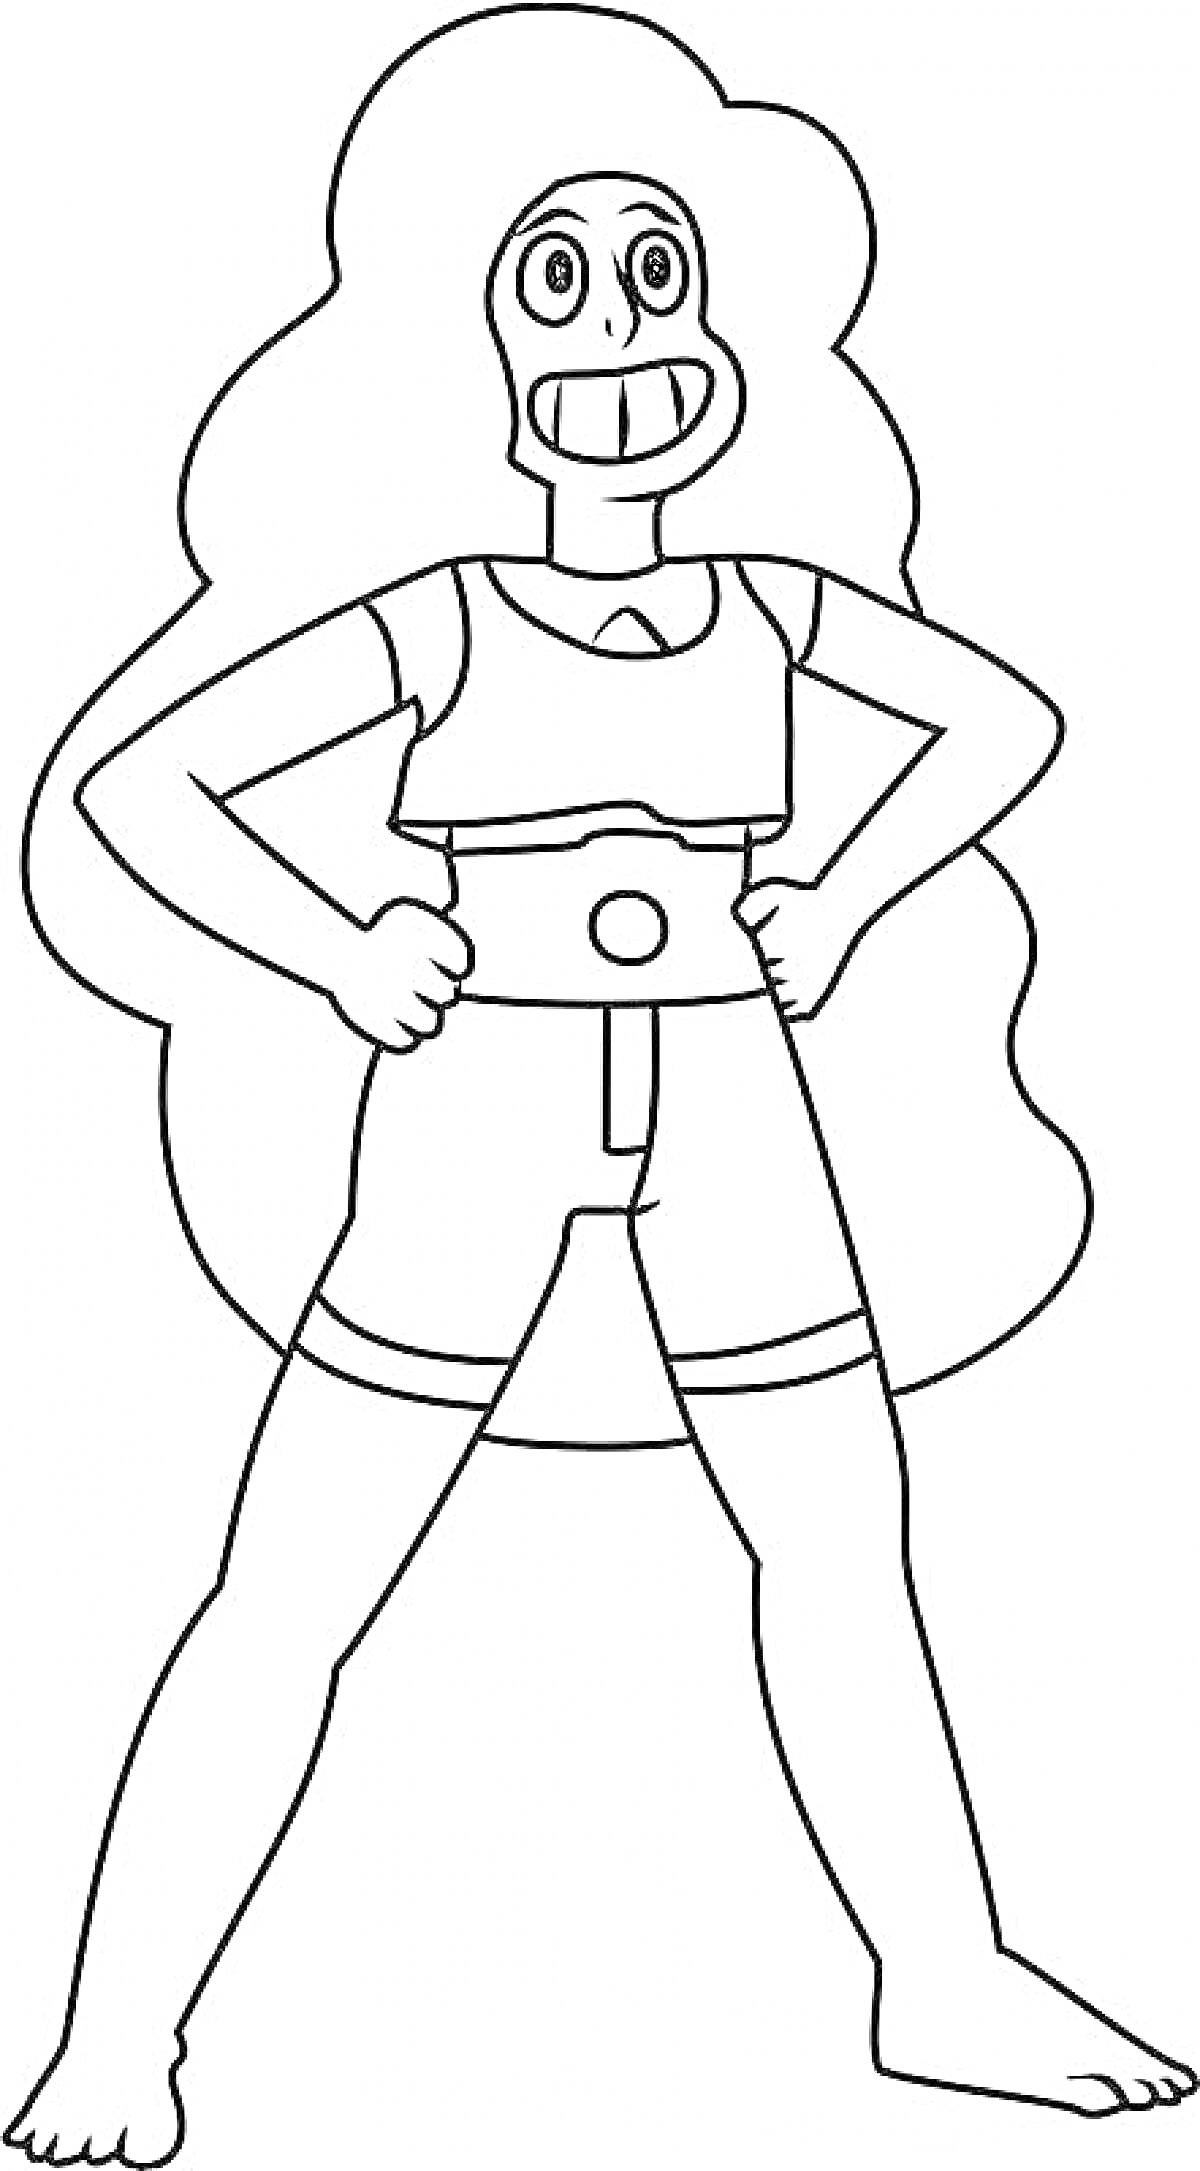 Раскраска Раскраска персонажа Вселенной Стивена с длинными волосами и улыбкой, в спортивной одежде